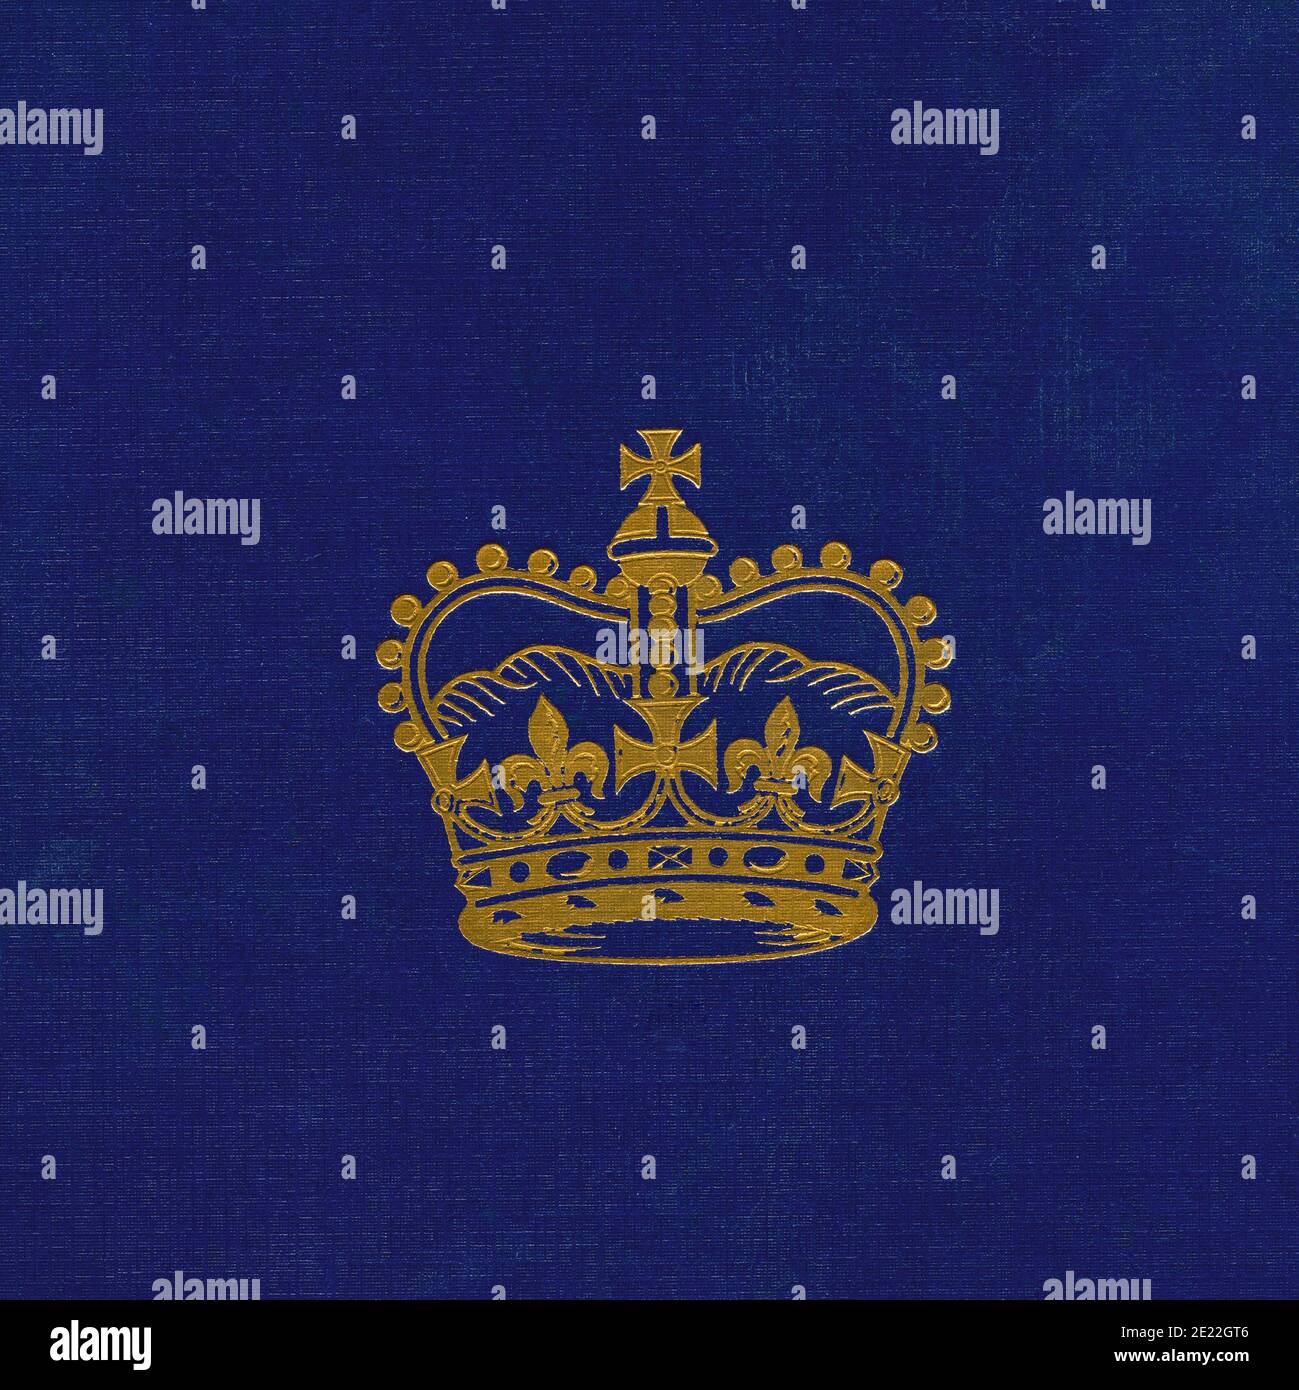 EDITORIALE SOLO oro illustrazione su sfondo blu della Corona di San Edoardo. Copertina del libro dell'incoronazione della Regina Elisabetta, pubblicato nel 1953. Foto Stock